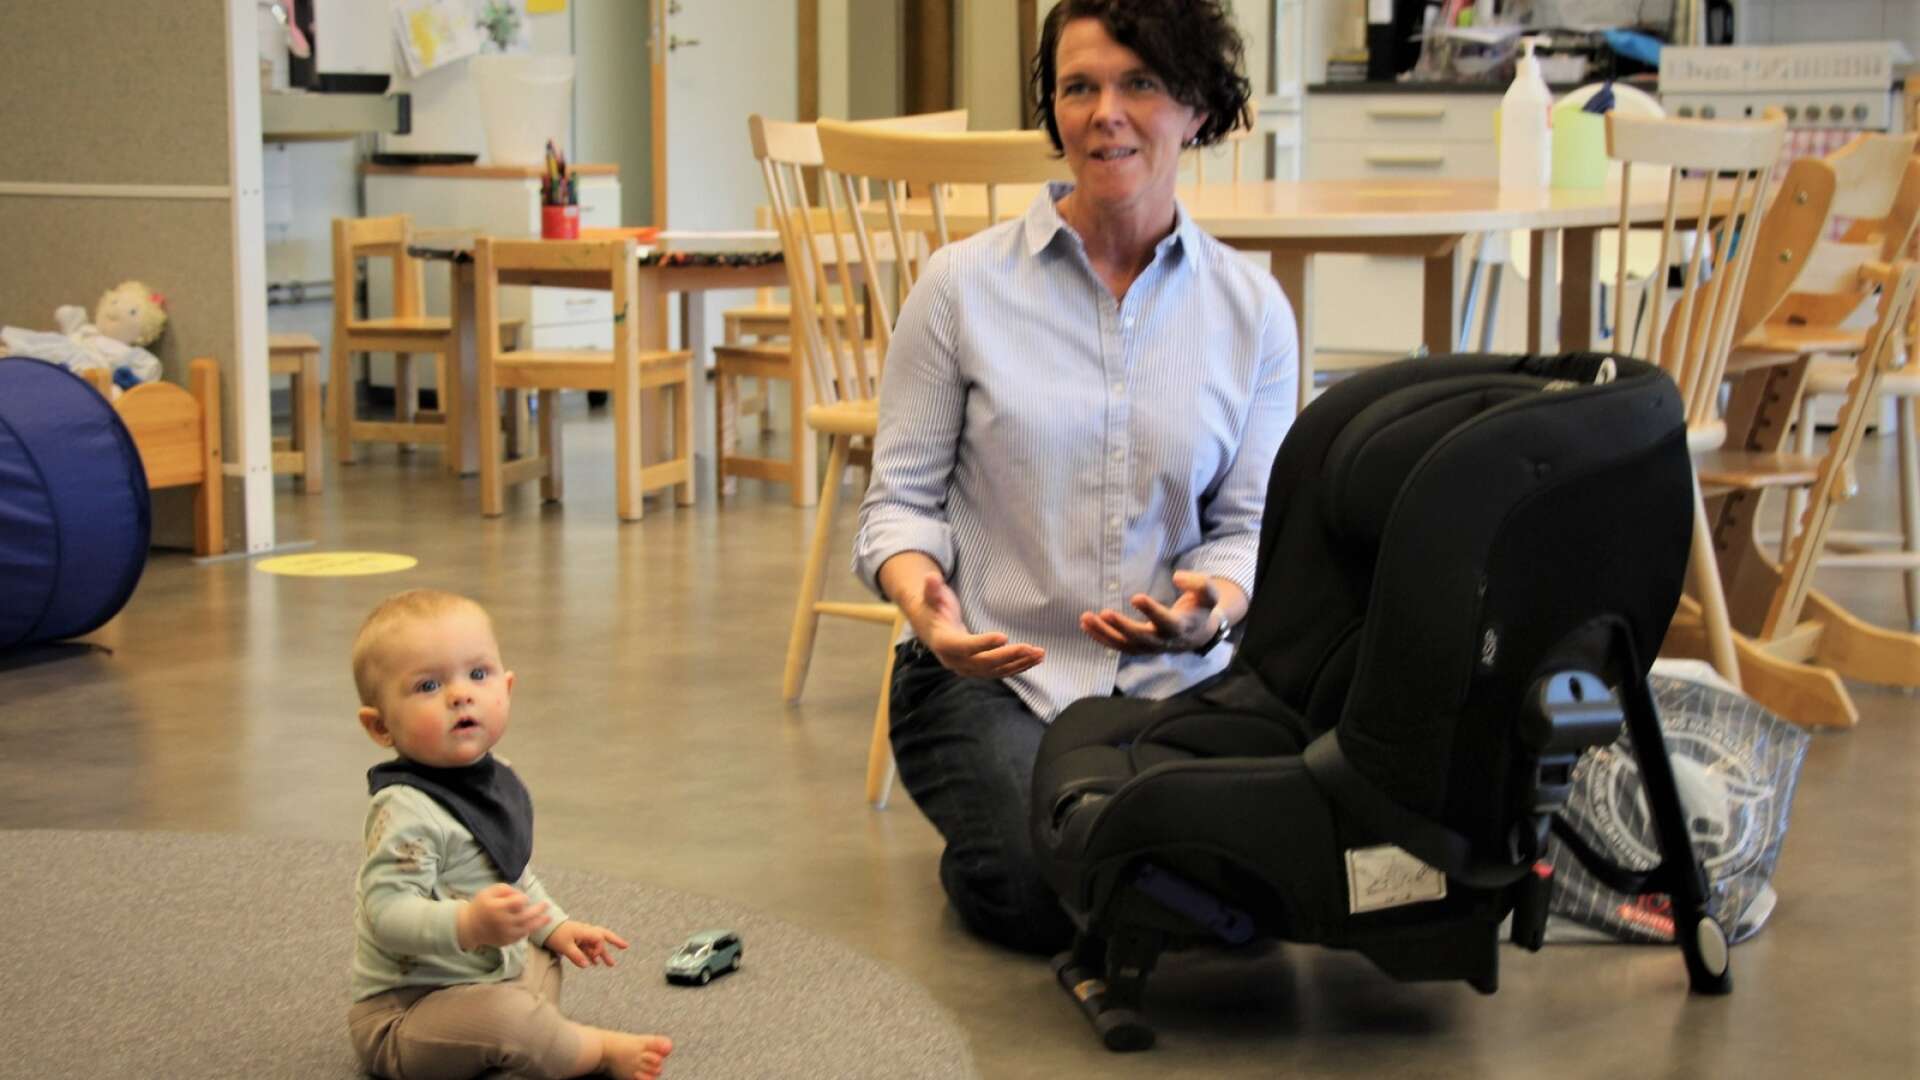 Petra Hansson informerade föräldrar på familjecentralen Pärlan om barnsäkerhet i bil. Selma Gillström var mycket intresserad av det som sades.